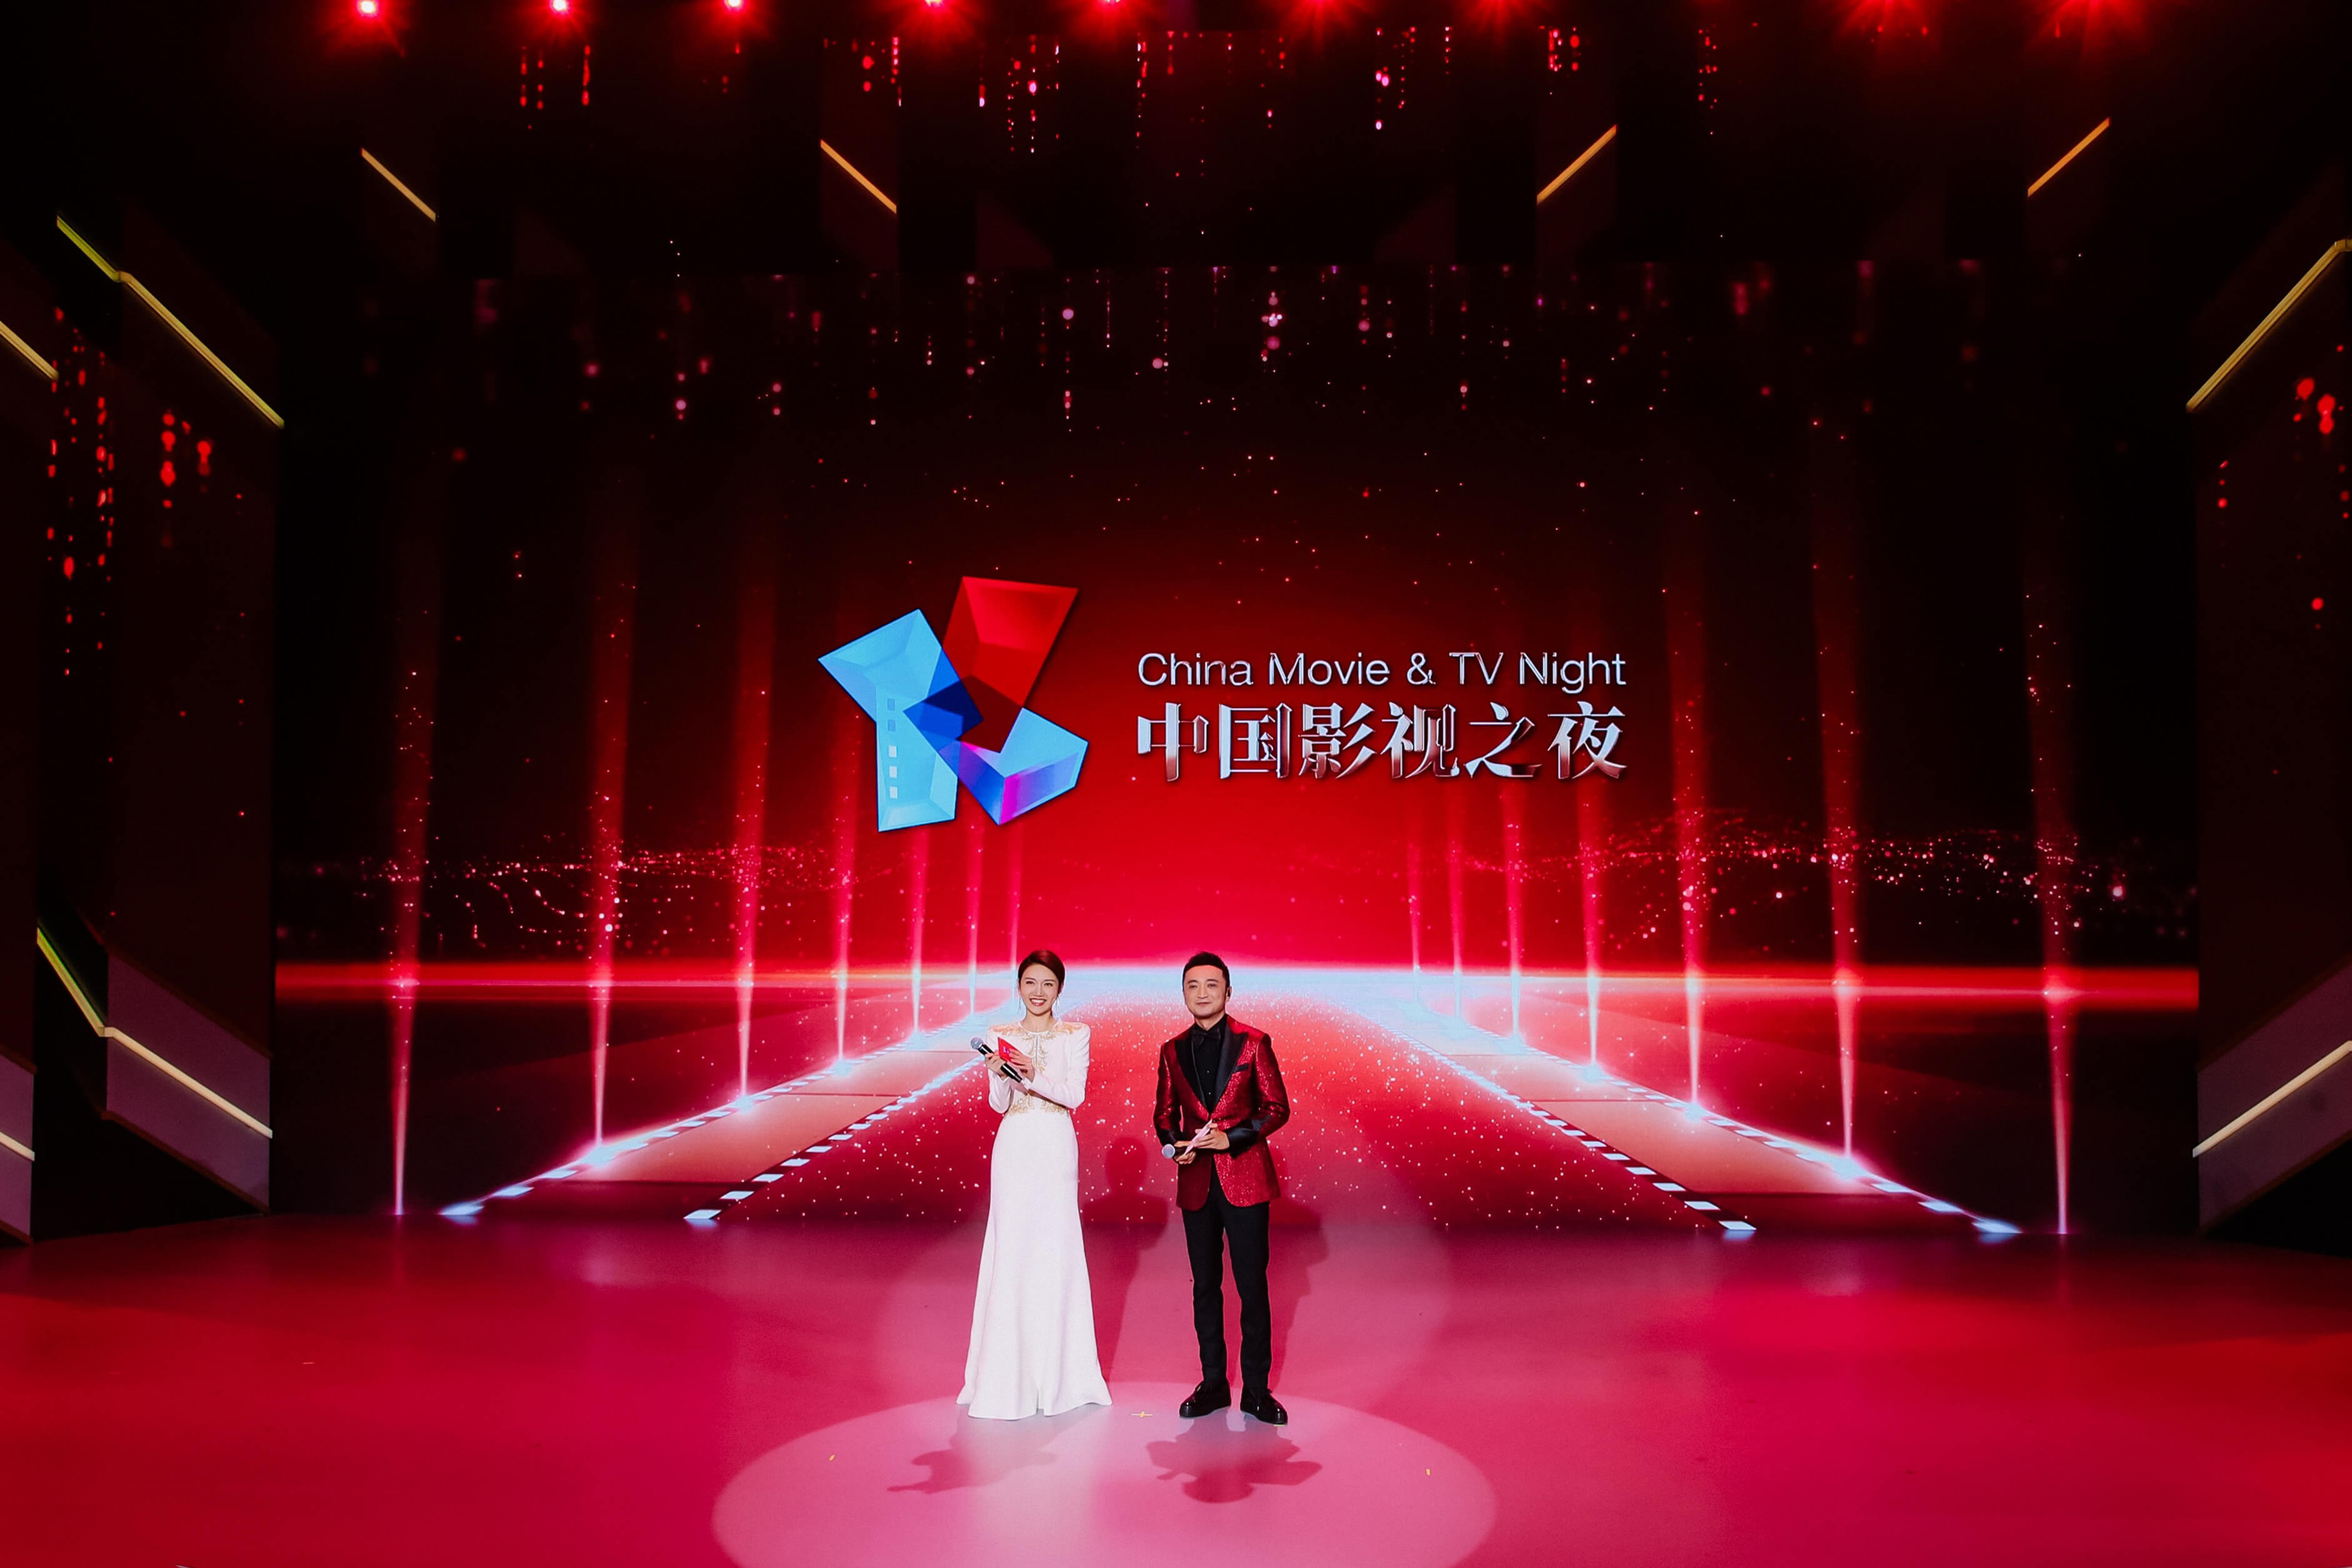 礼赞百年华章 共赴光影之约 上海国际电影节“中国影视之夜”成功举办